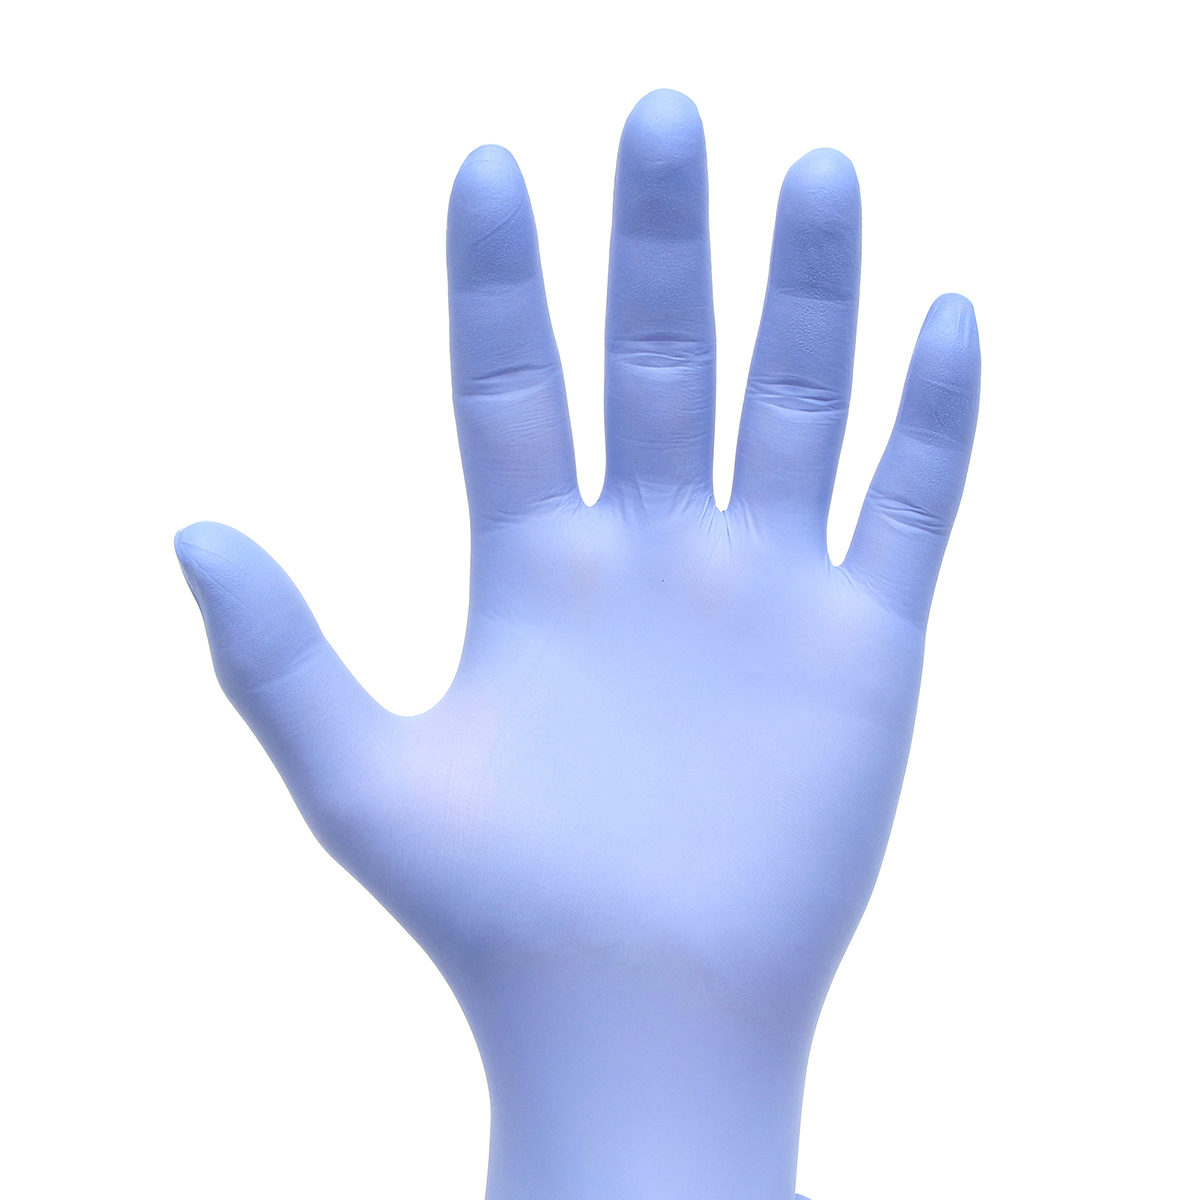 

100Pcs Одноразовый нитрил Латекс Перчатки Медицинская Светло-голубой свет без порошка 3 размера